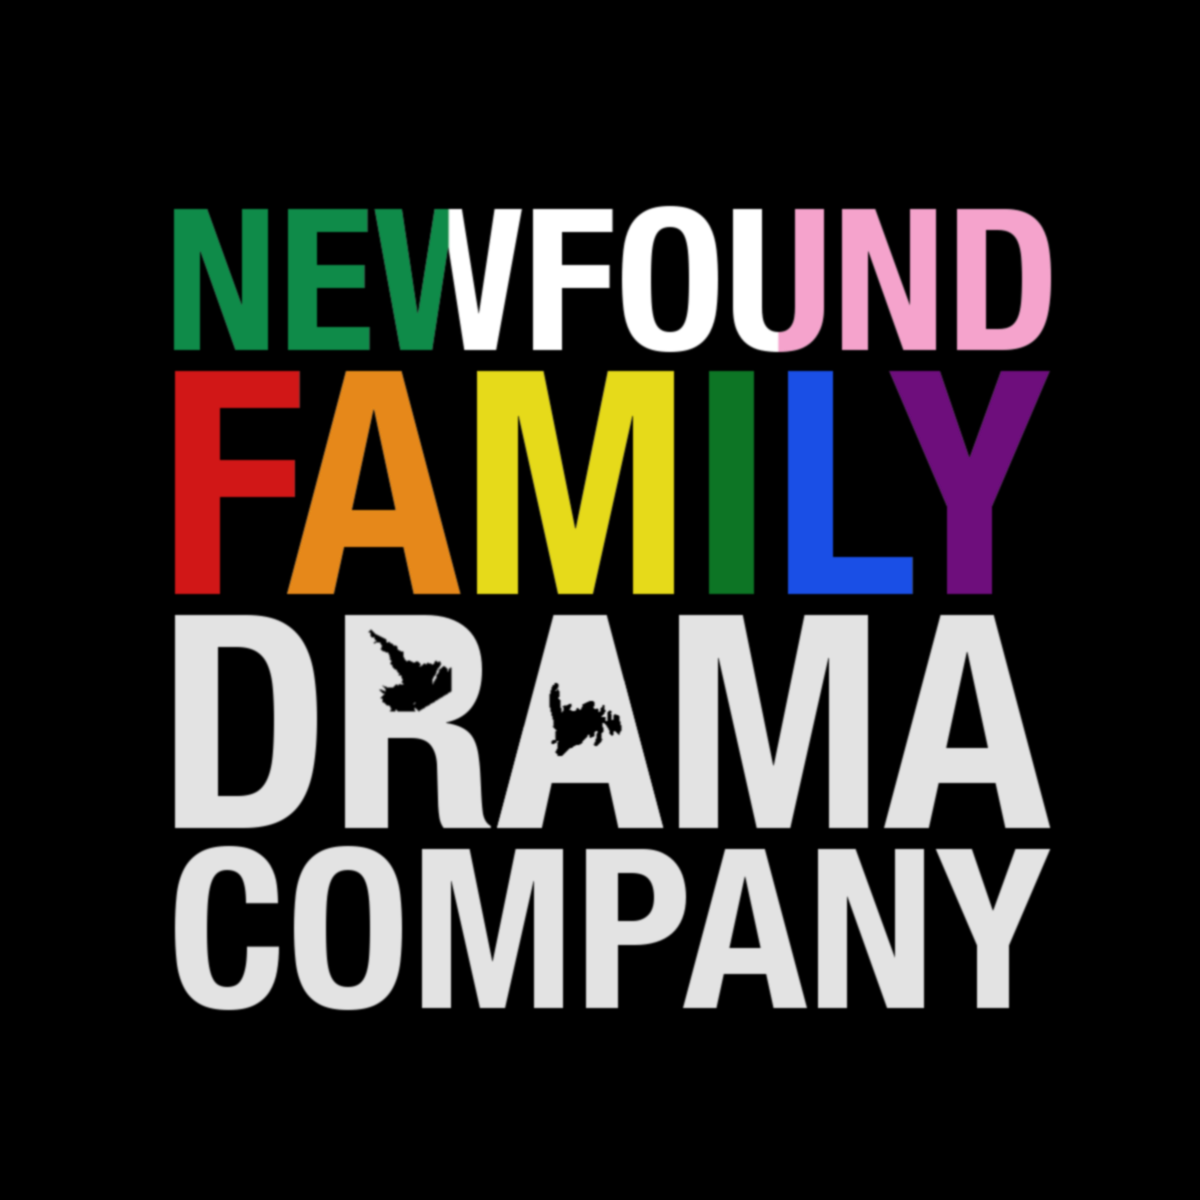 Newfound Family Drama Company